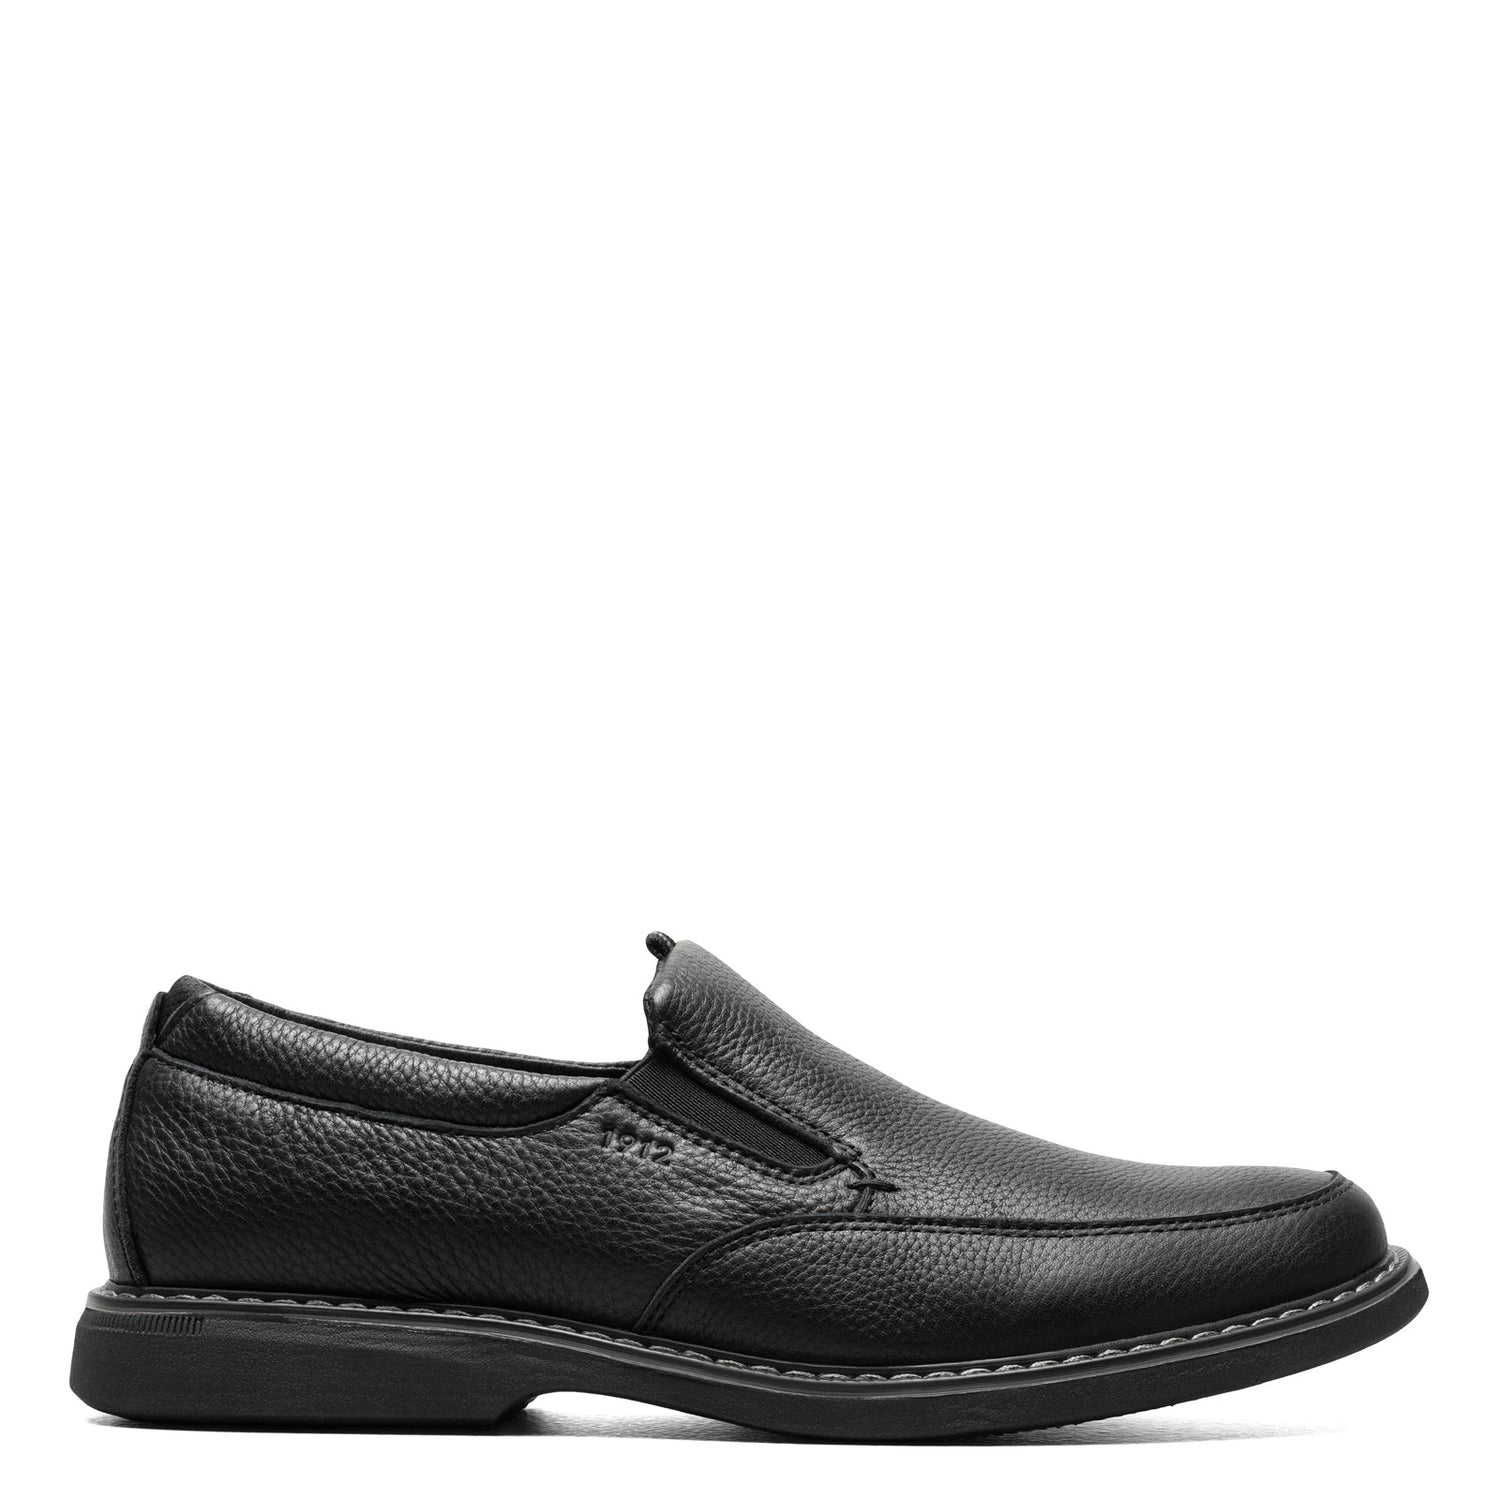 Peltz Shoes  Men's Nunn Bush Otto Moc Toe Slip-On BLACK 84963-007